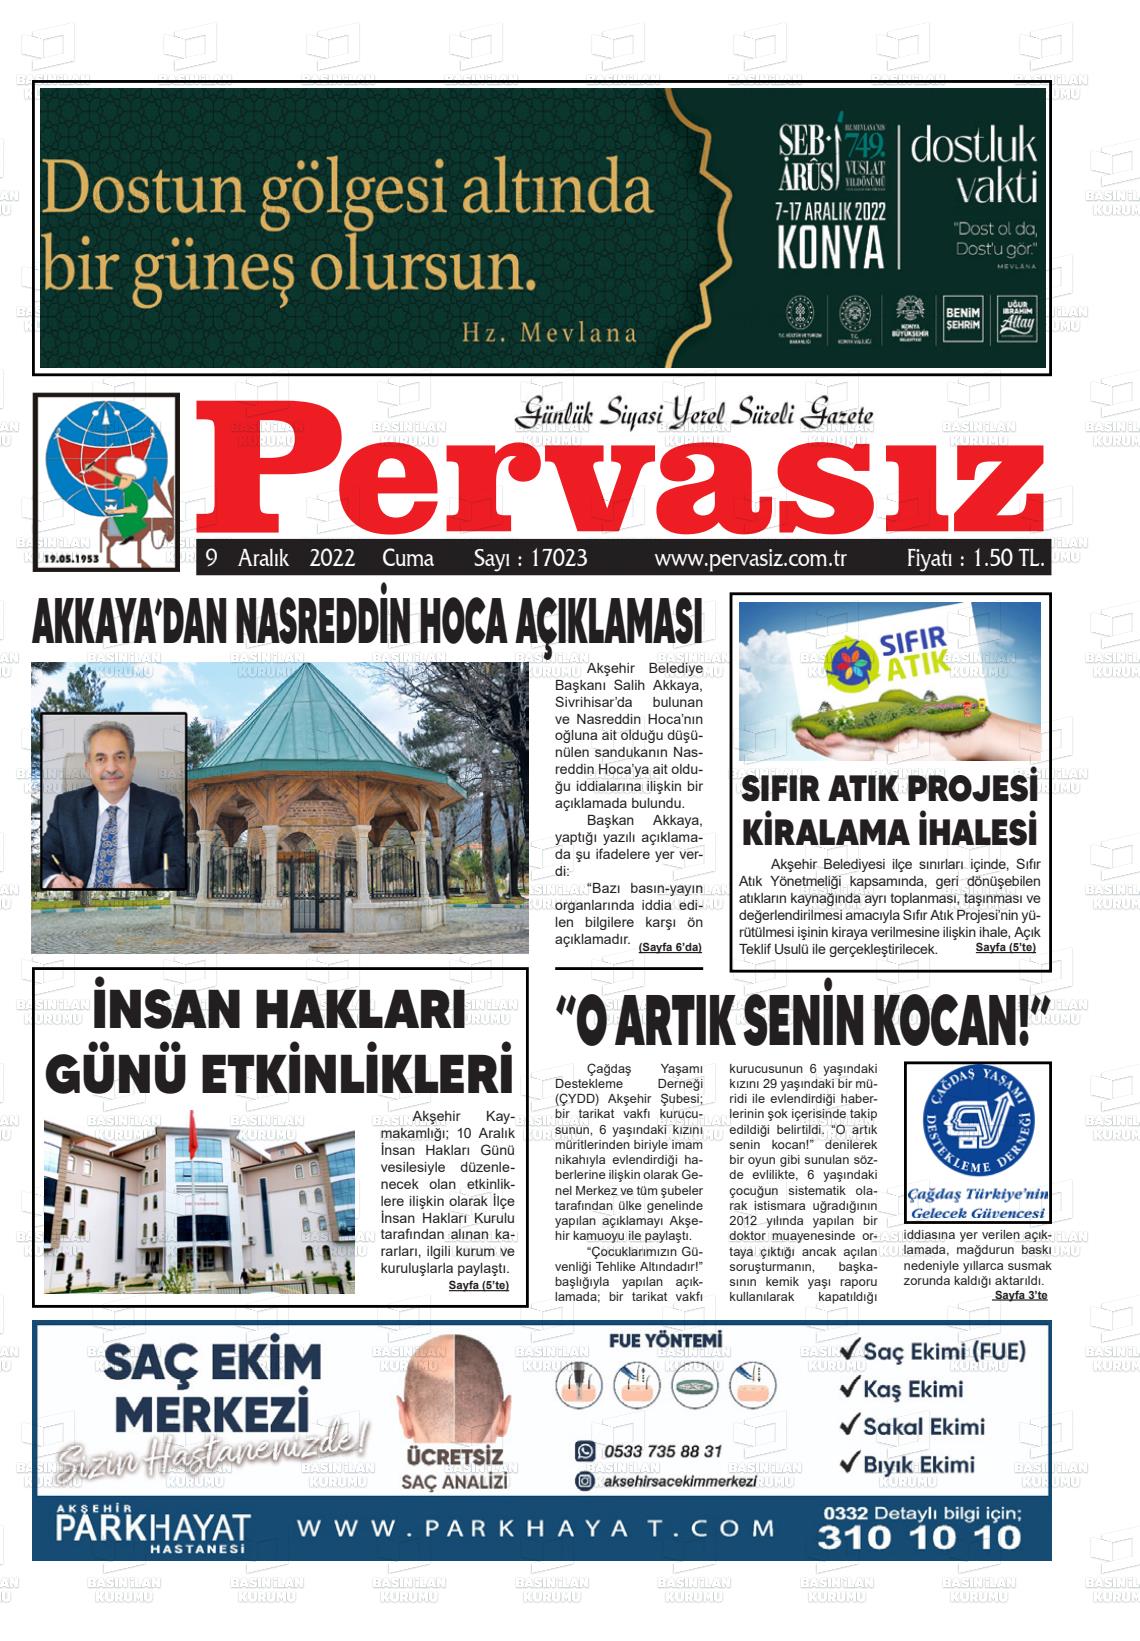 09 Aralık 2022 Konya Pervasız Gazete Manşeti